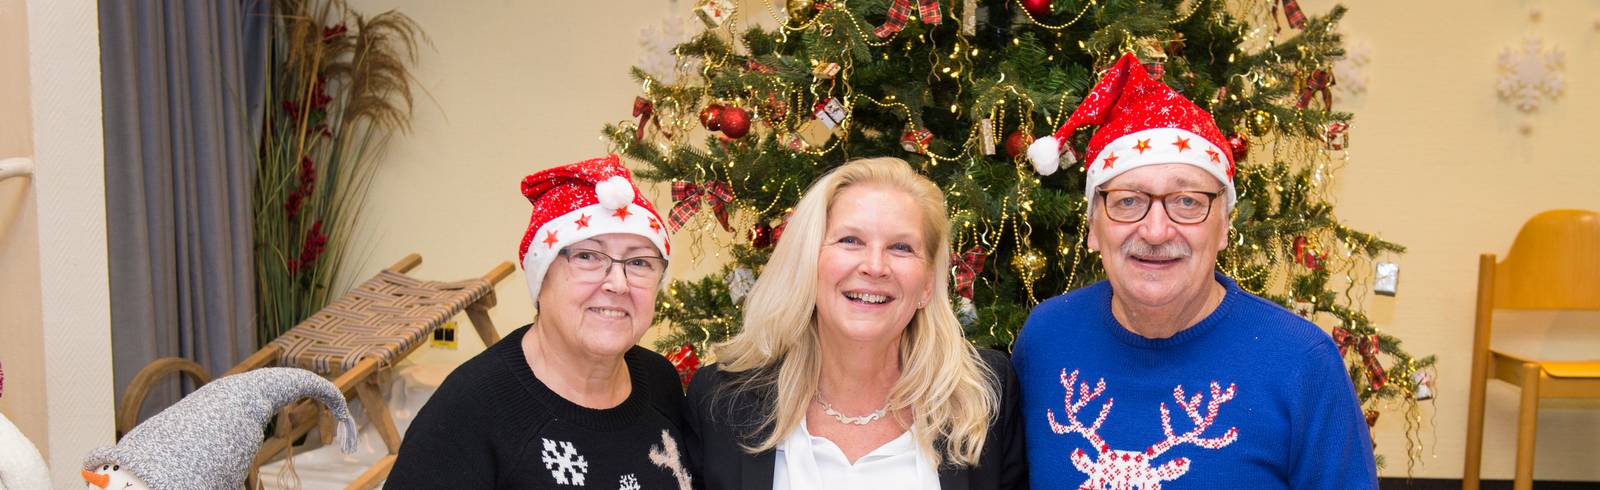 Senioren-Weihnacht: Gemeinsam statt einsam